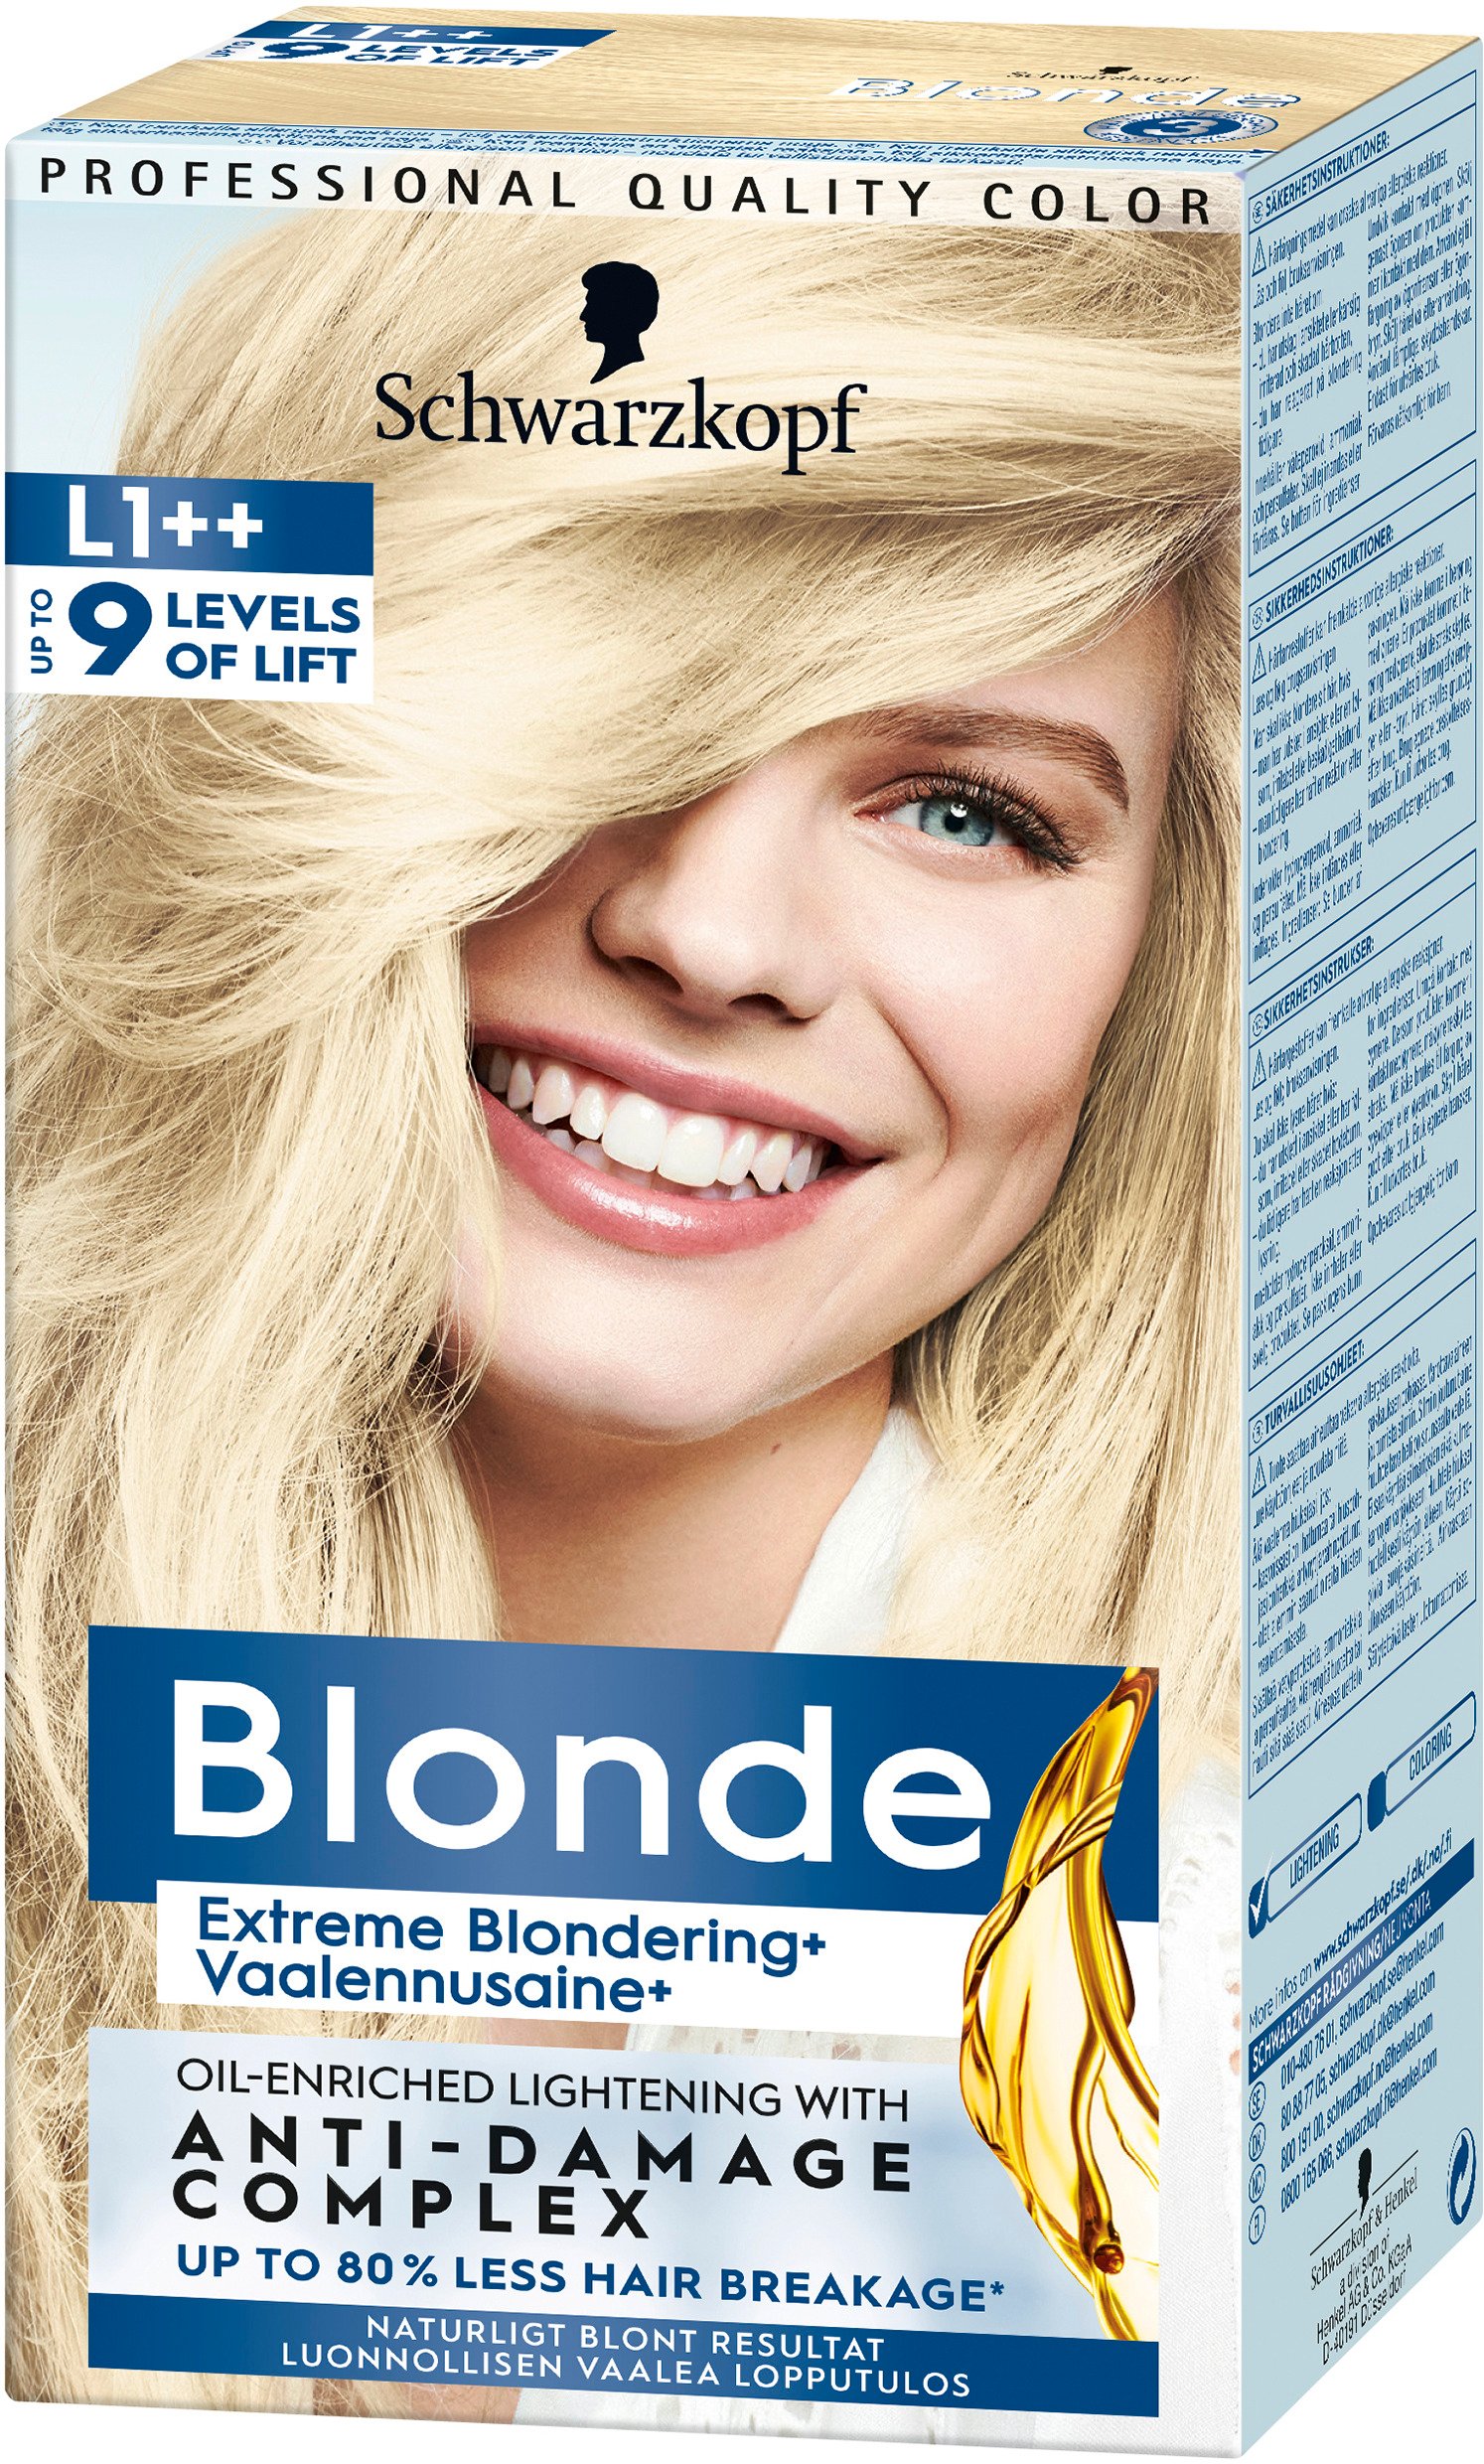 Schwarzkopf Blonde L1++ Extreme Blondering 1 st